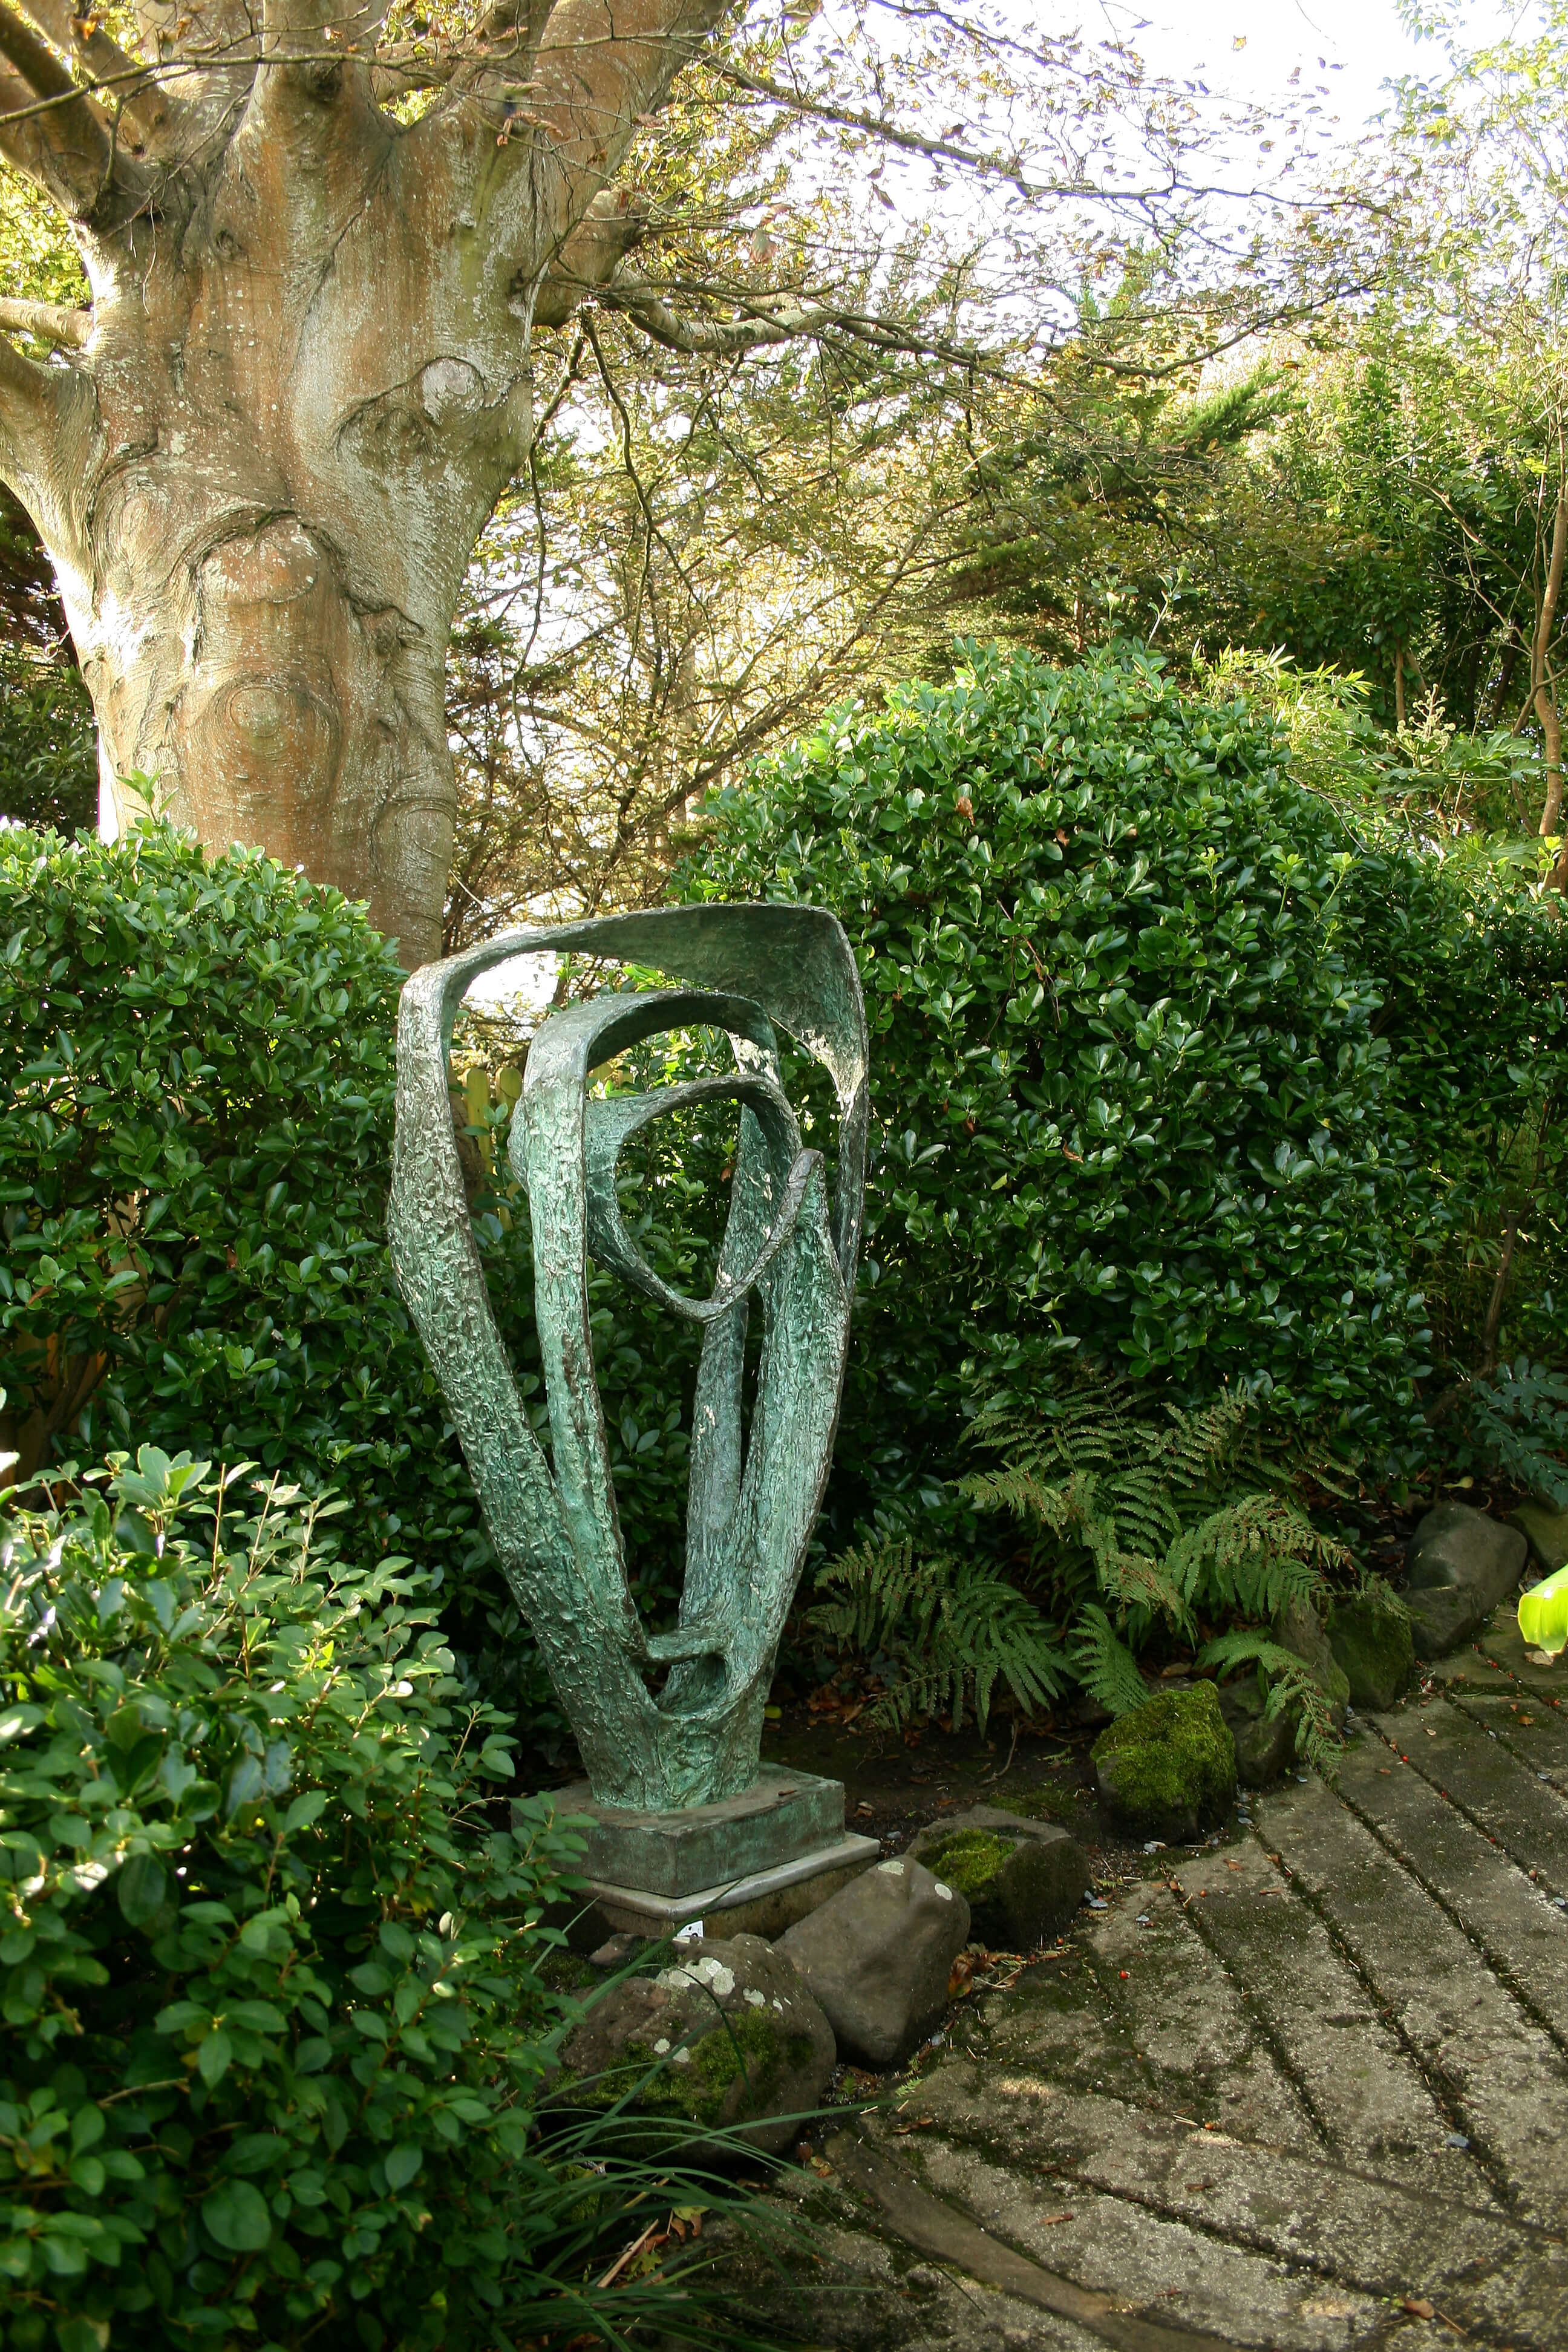 Barbara Hepworth studio garden